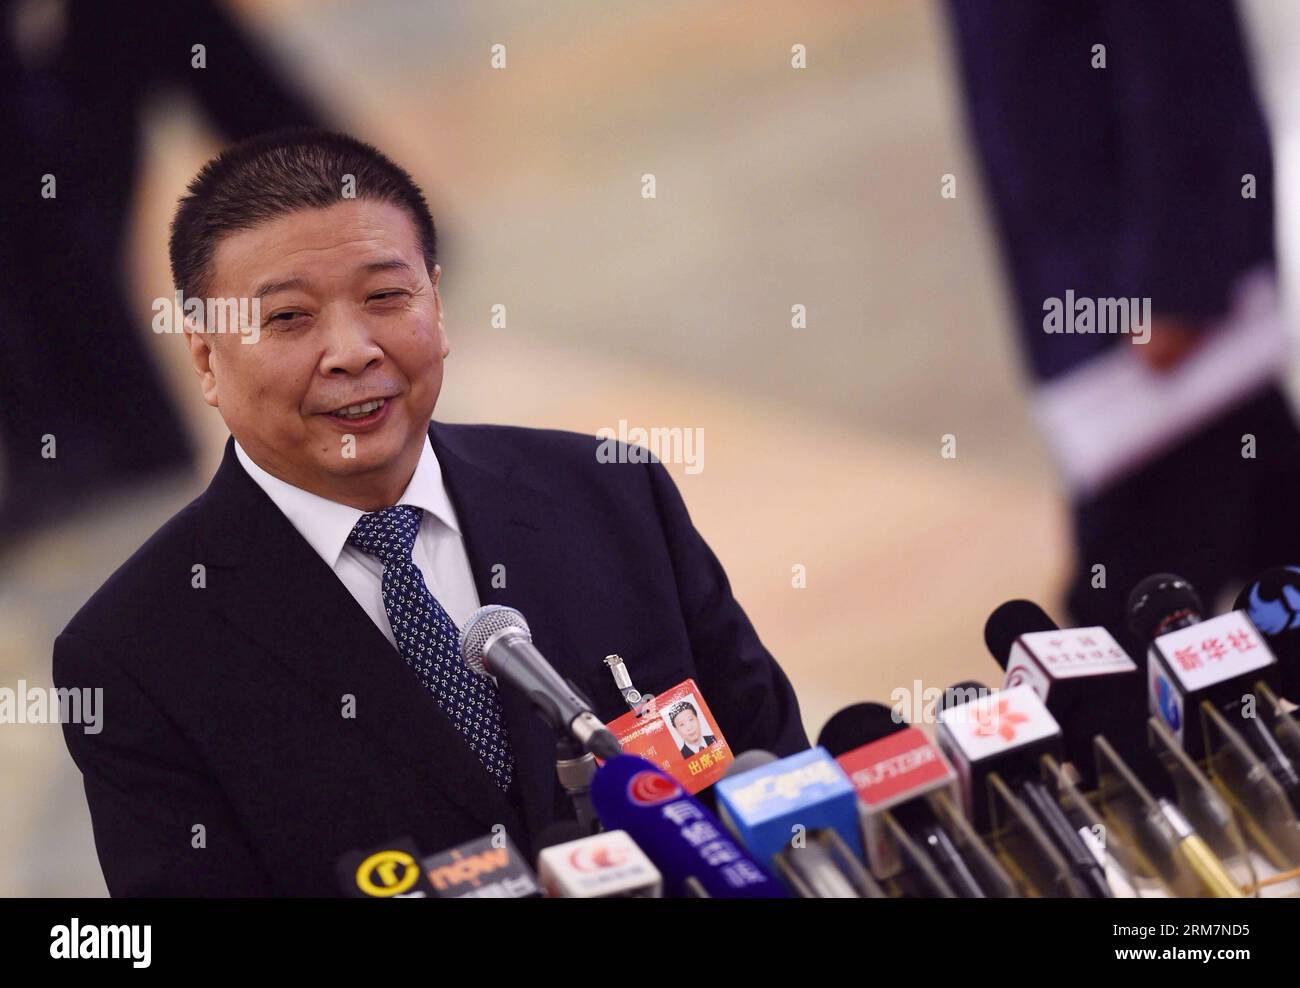 (140310) -- PECHINO, 10 marzo 2014 (Xinhua) -- il ministro cinese della terra e delle risorse Jiang Daming riceve un'intervista presso la grande sala del popolo a Pechino, capitale della Cina, 10 marzo 2014. Jiang ha detto che il ministero dei terreni e delle risorse (MLR) e il ministero degli alloggi e dello sviluppo urbano-rurale (MOHURD) avrebbero congiuntamente represso la costruzione e le vendite di alloggi con diritti di proprietà limitati. (Xinhua/Jin Liangkuai) (zkr) (DUE SESSIONI) CINA-PECHINO-INTERVISTA-JIANG DAMING-LIMITED PROPERTY RIGHTS (CN) PUBLICATIONxNOTxINxCHN Pechino 10 marzo 2014 XINHUA Chinese Minister of Country and Reso Foto Stock